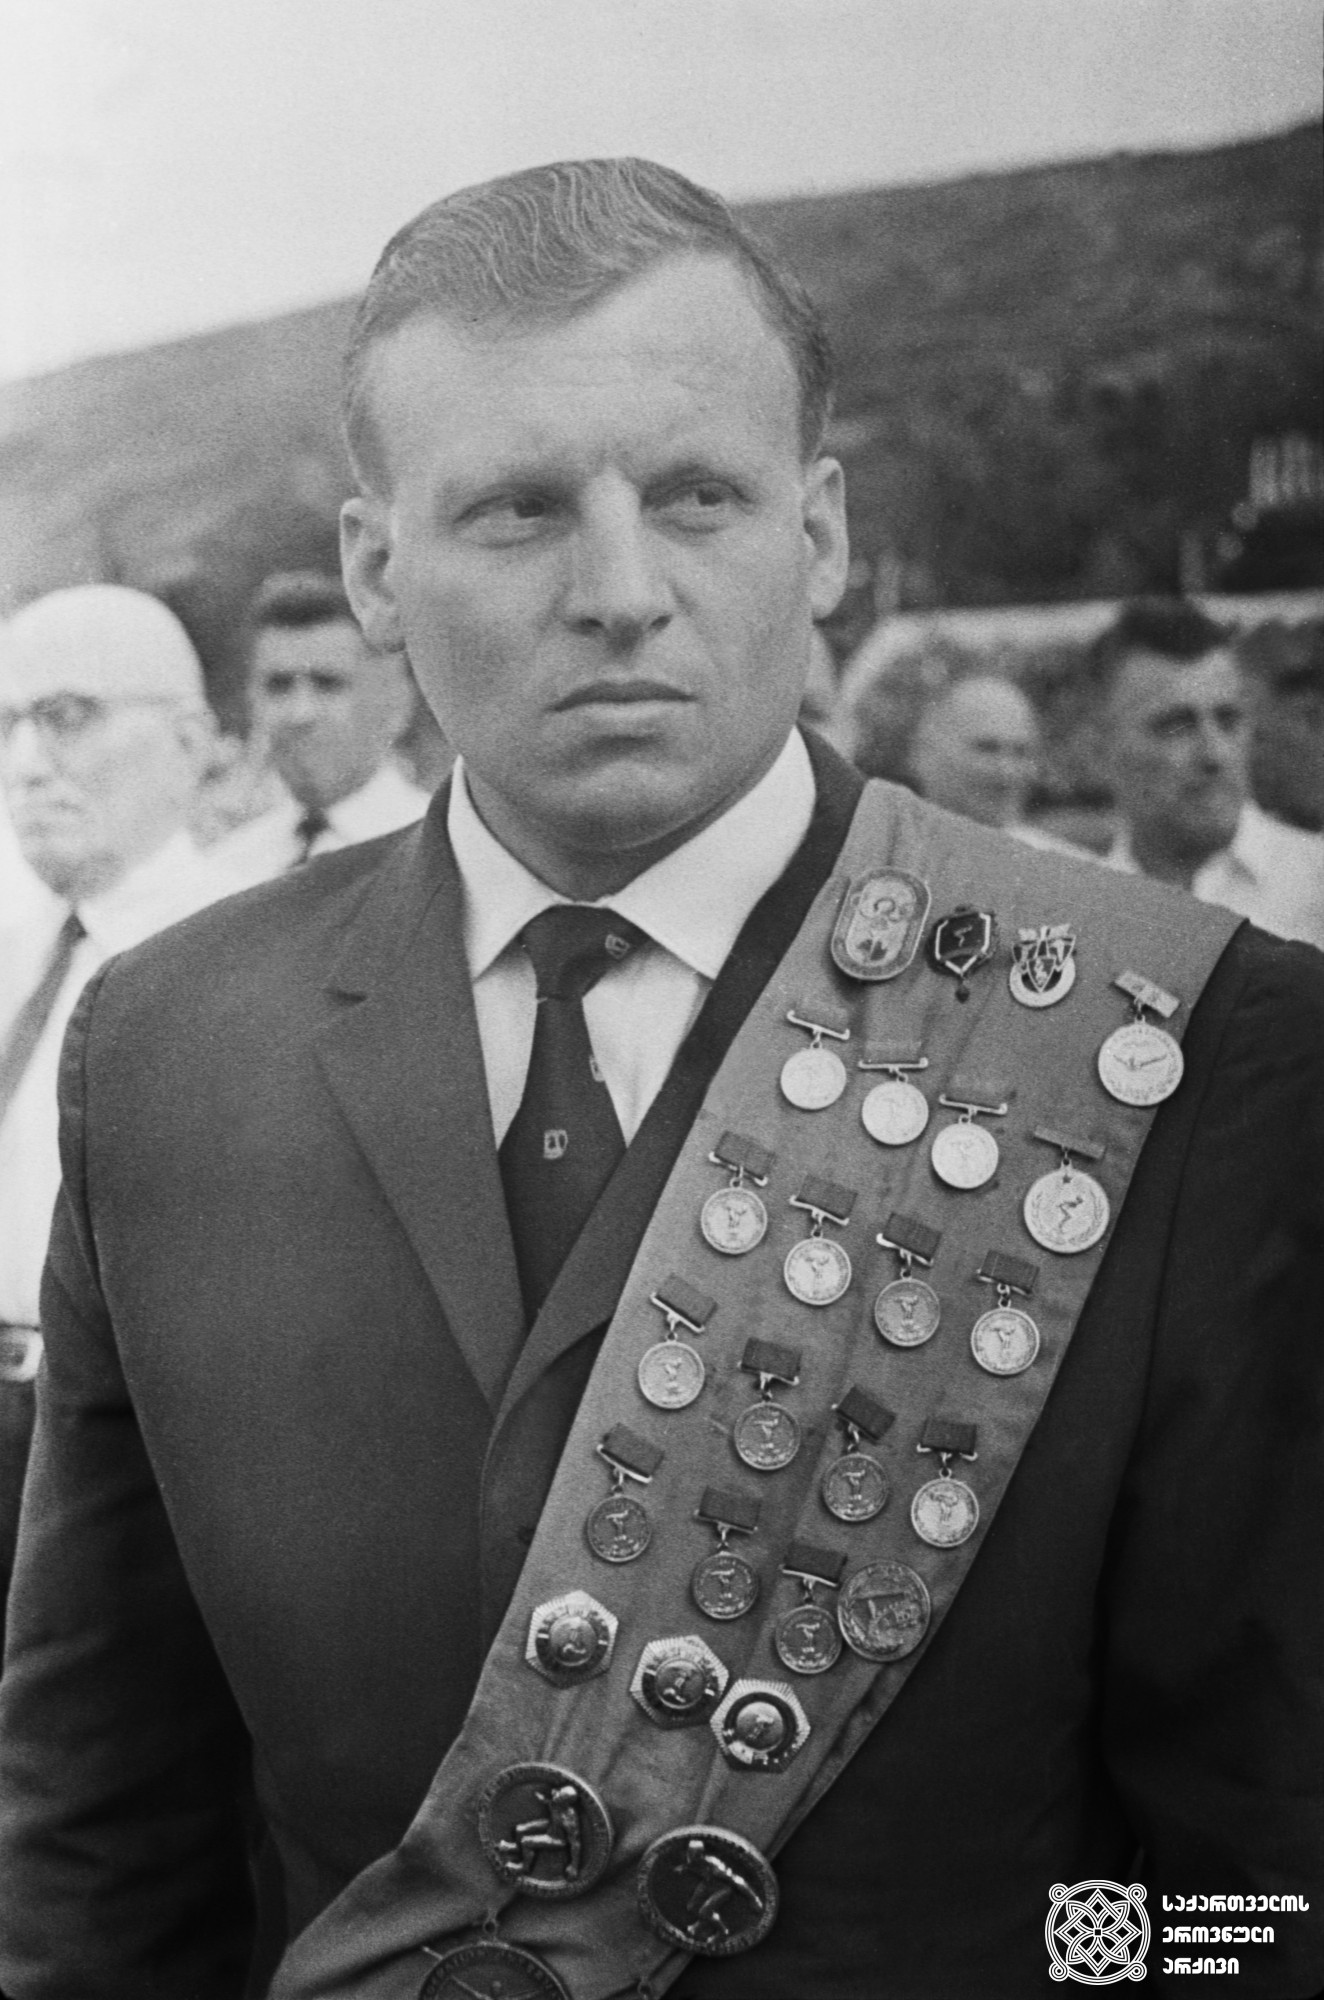 ბორის ნიკიტინი. <br>
XVI ოლიმპიური თამაშების მესამე პრიზიორი (1956 წელი, მელბურნი). XVII ოლიმპიური თამაშების მონაწილე (1960 წელი, რომი). <br>
Boris Nikitin. <br>
Third-prize winner of the XVI Olympic Games in Aquatics (1956, Melbourne); participant of the XVII Olympic Games (1960, Rome).